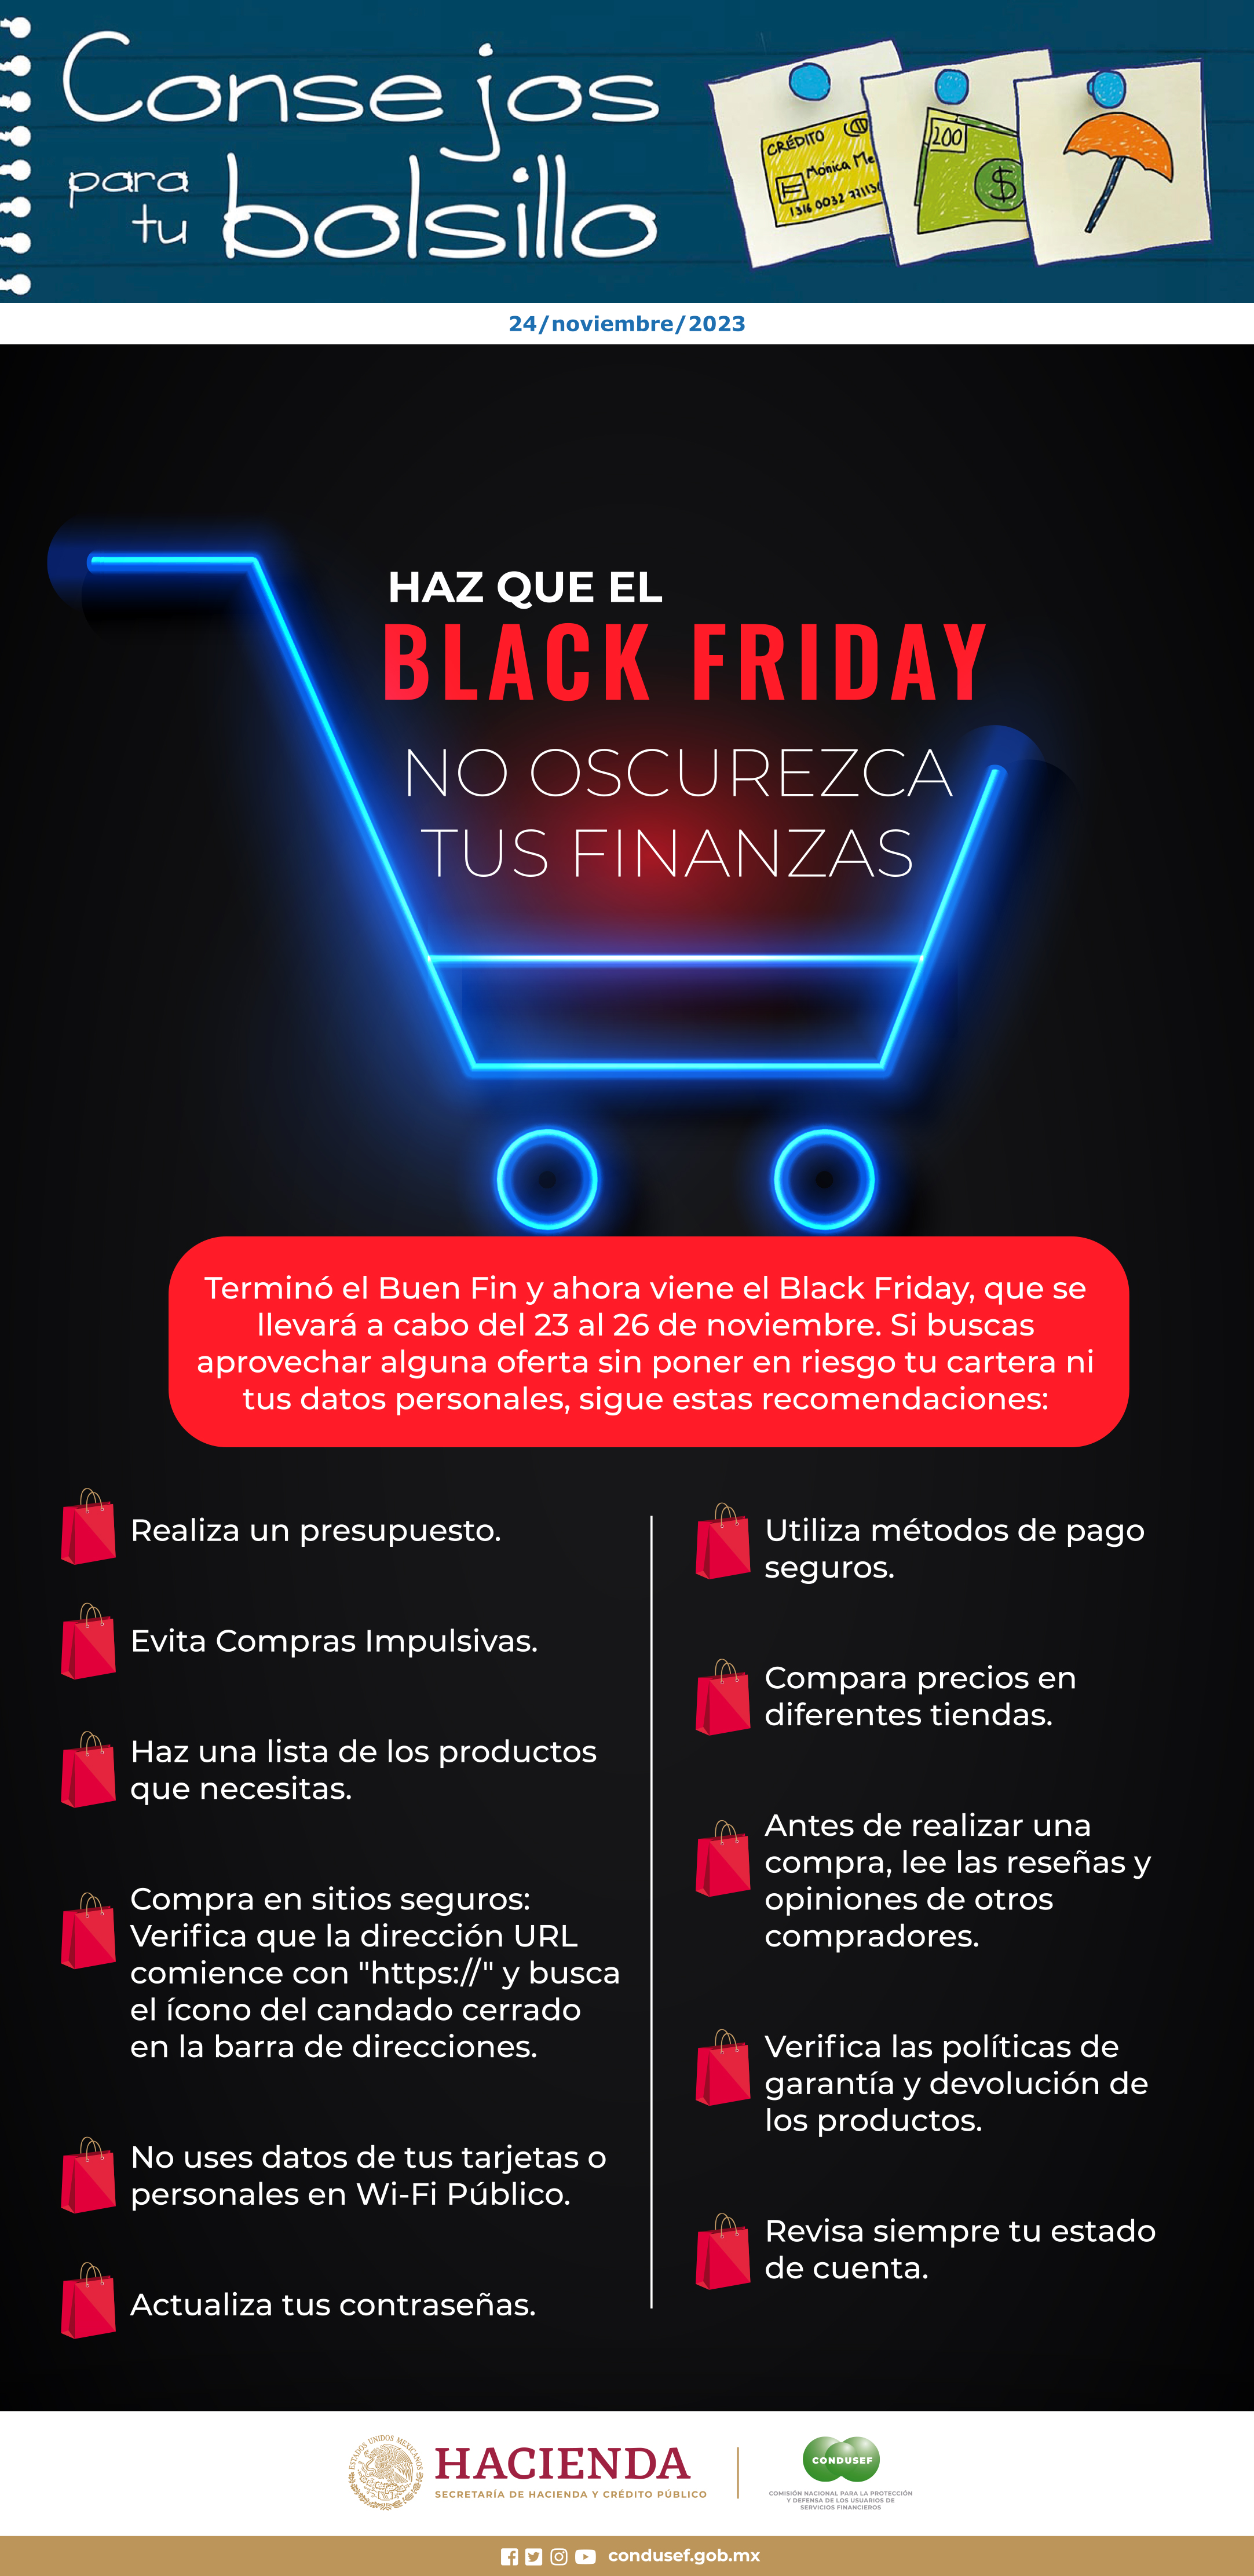 Haz que el Black Friday no oscurezca tus finanzas